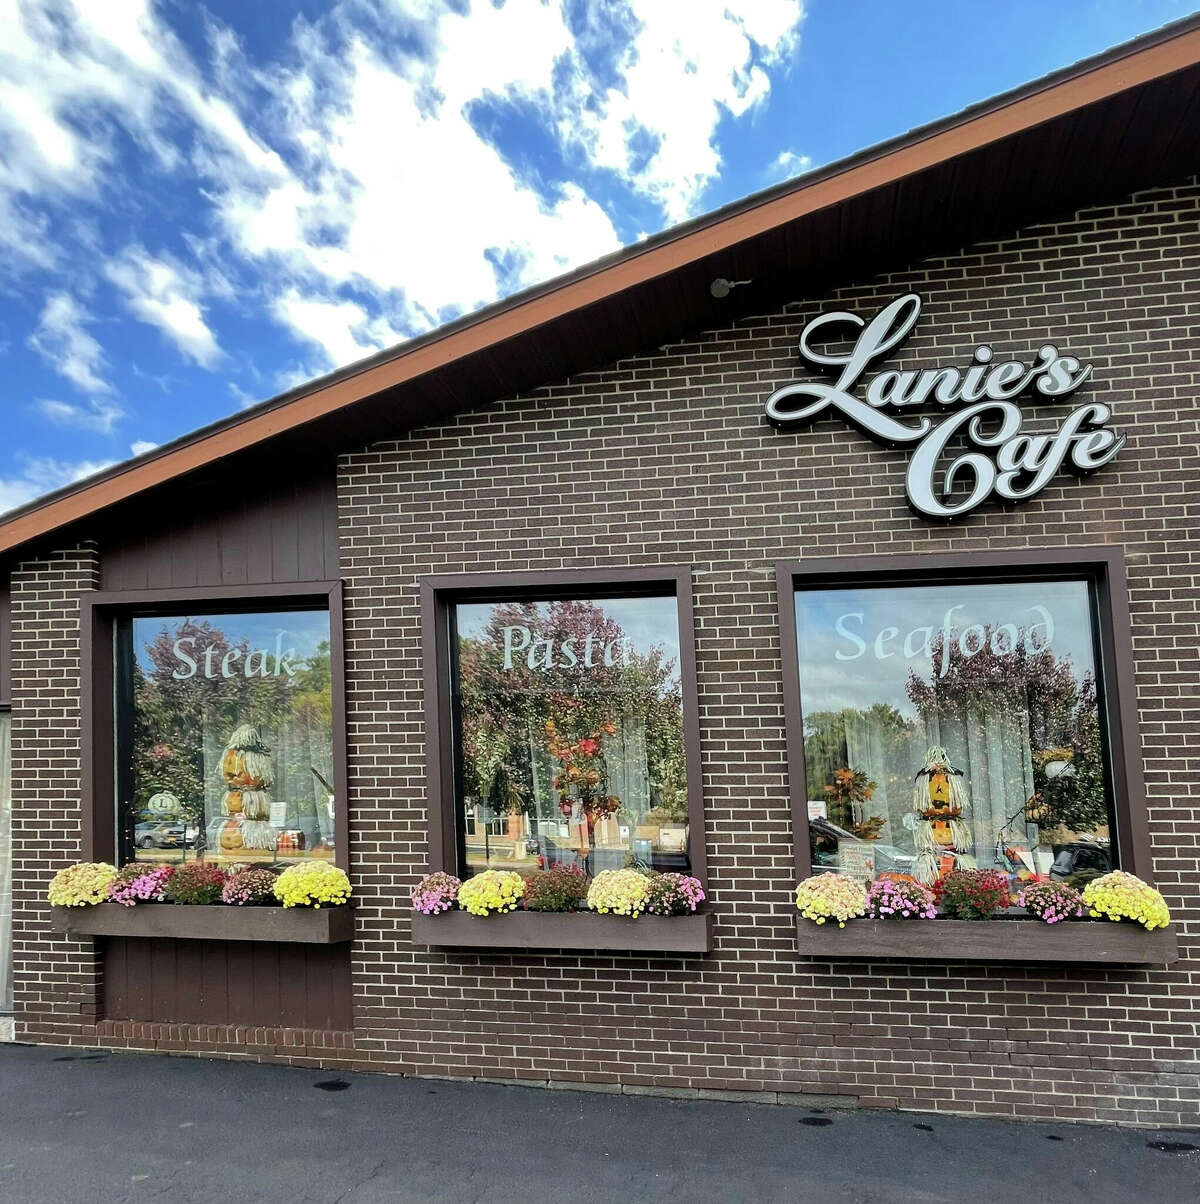 Lanie’s Cafe